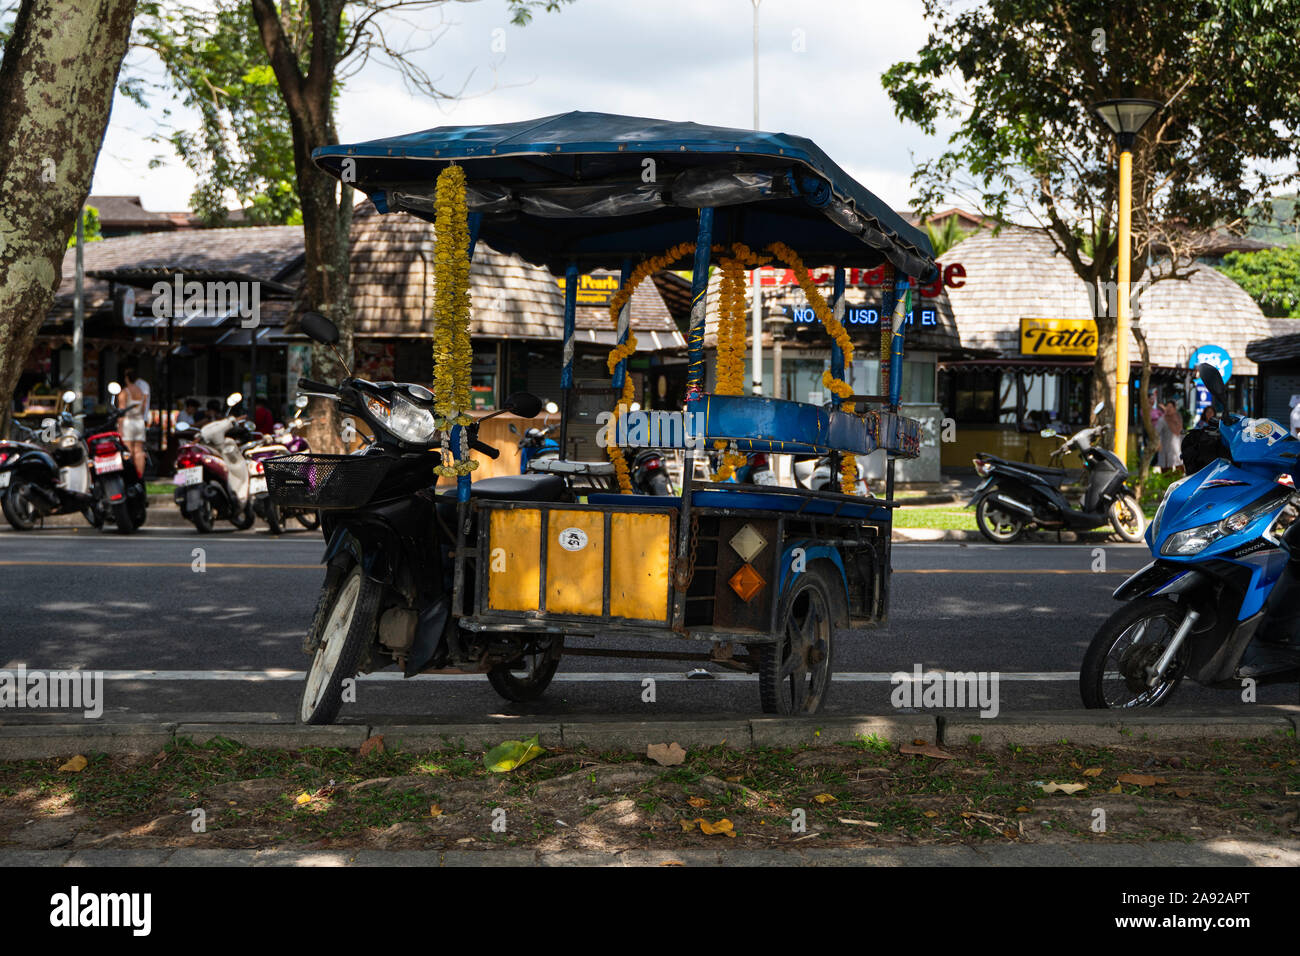 KRABI, THAILAND - 10. Juli 2019. Tuktuk steht auf einer Straße auf einer Straße in Krabi. Motorrad Taxis sind Tuk Tuk in Thailand genannt. Stockfoto